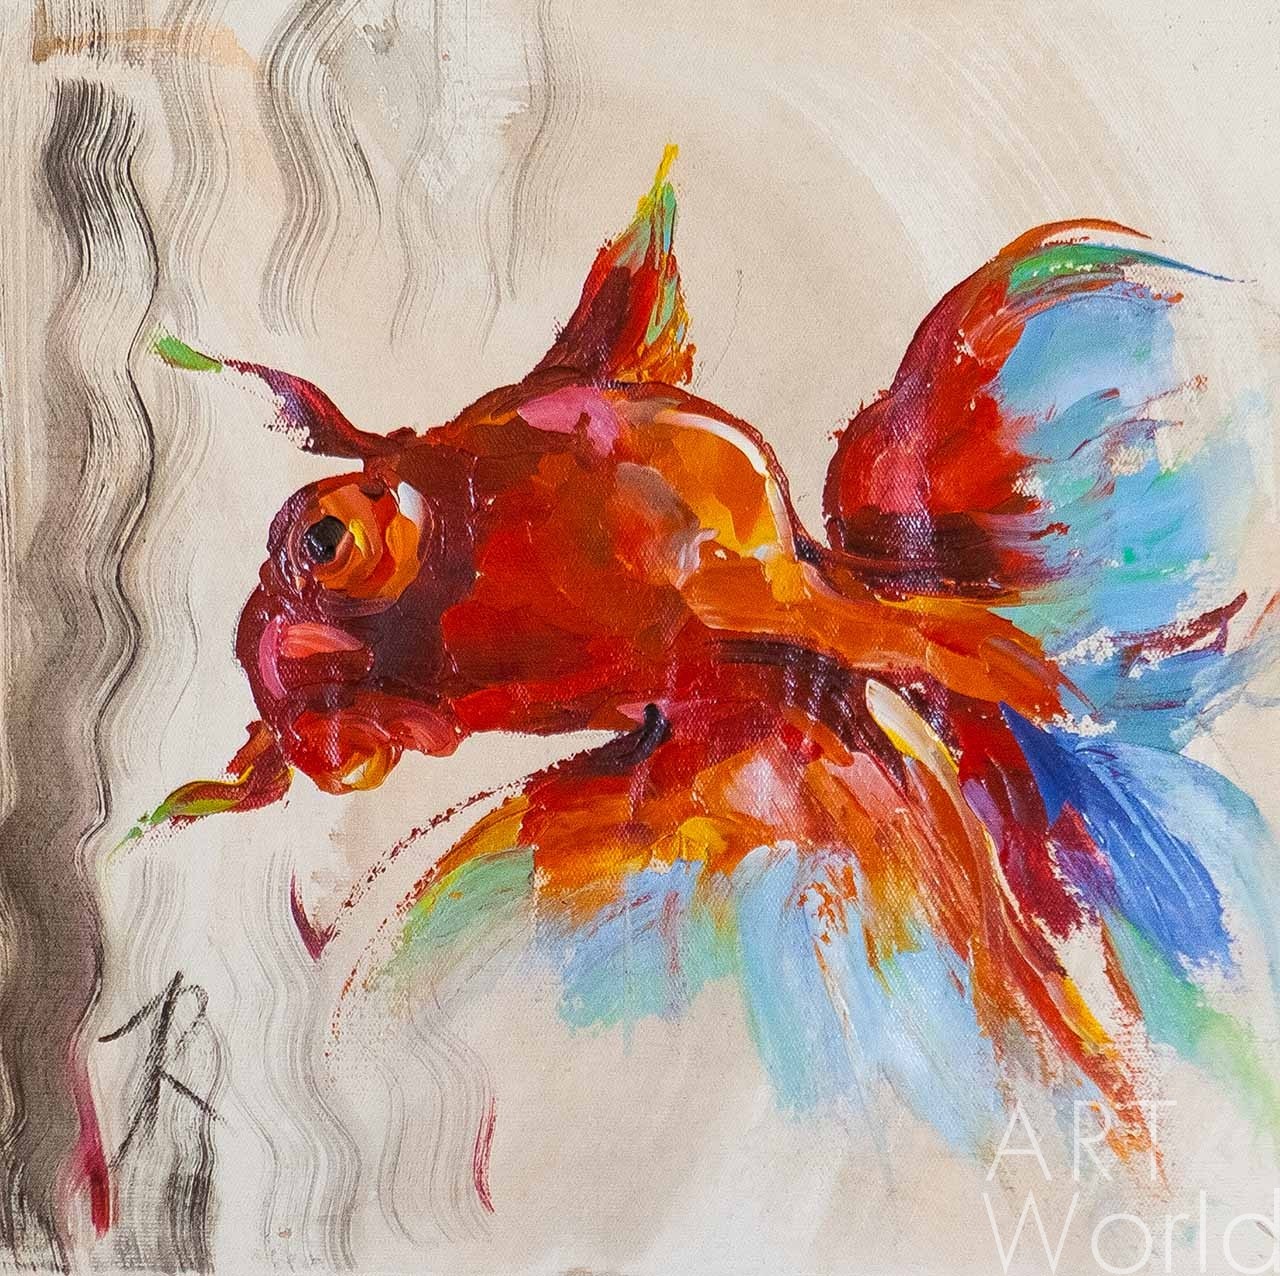 картина масло холст Картина маслом "Золотая рыбка. Красный телескоп", Родригес Хосе, LegacyArt Артворлд.ру